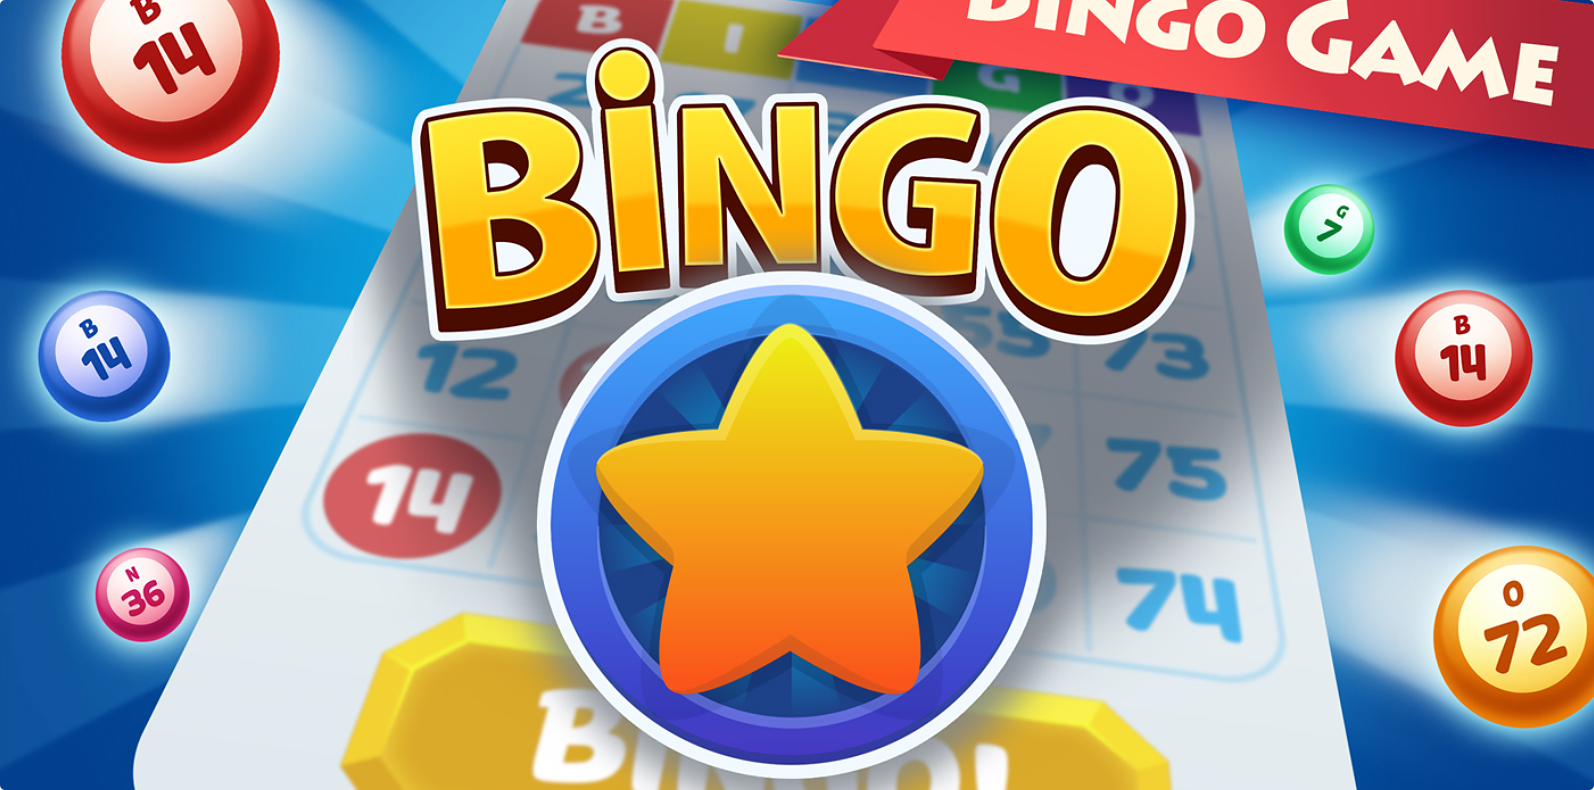 Bingo Dreams 2d gambling game